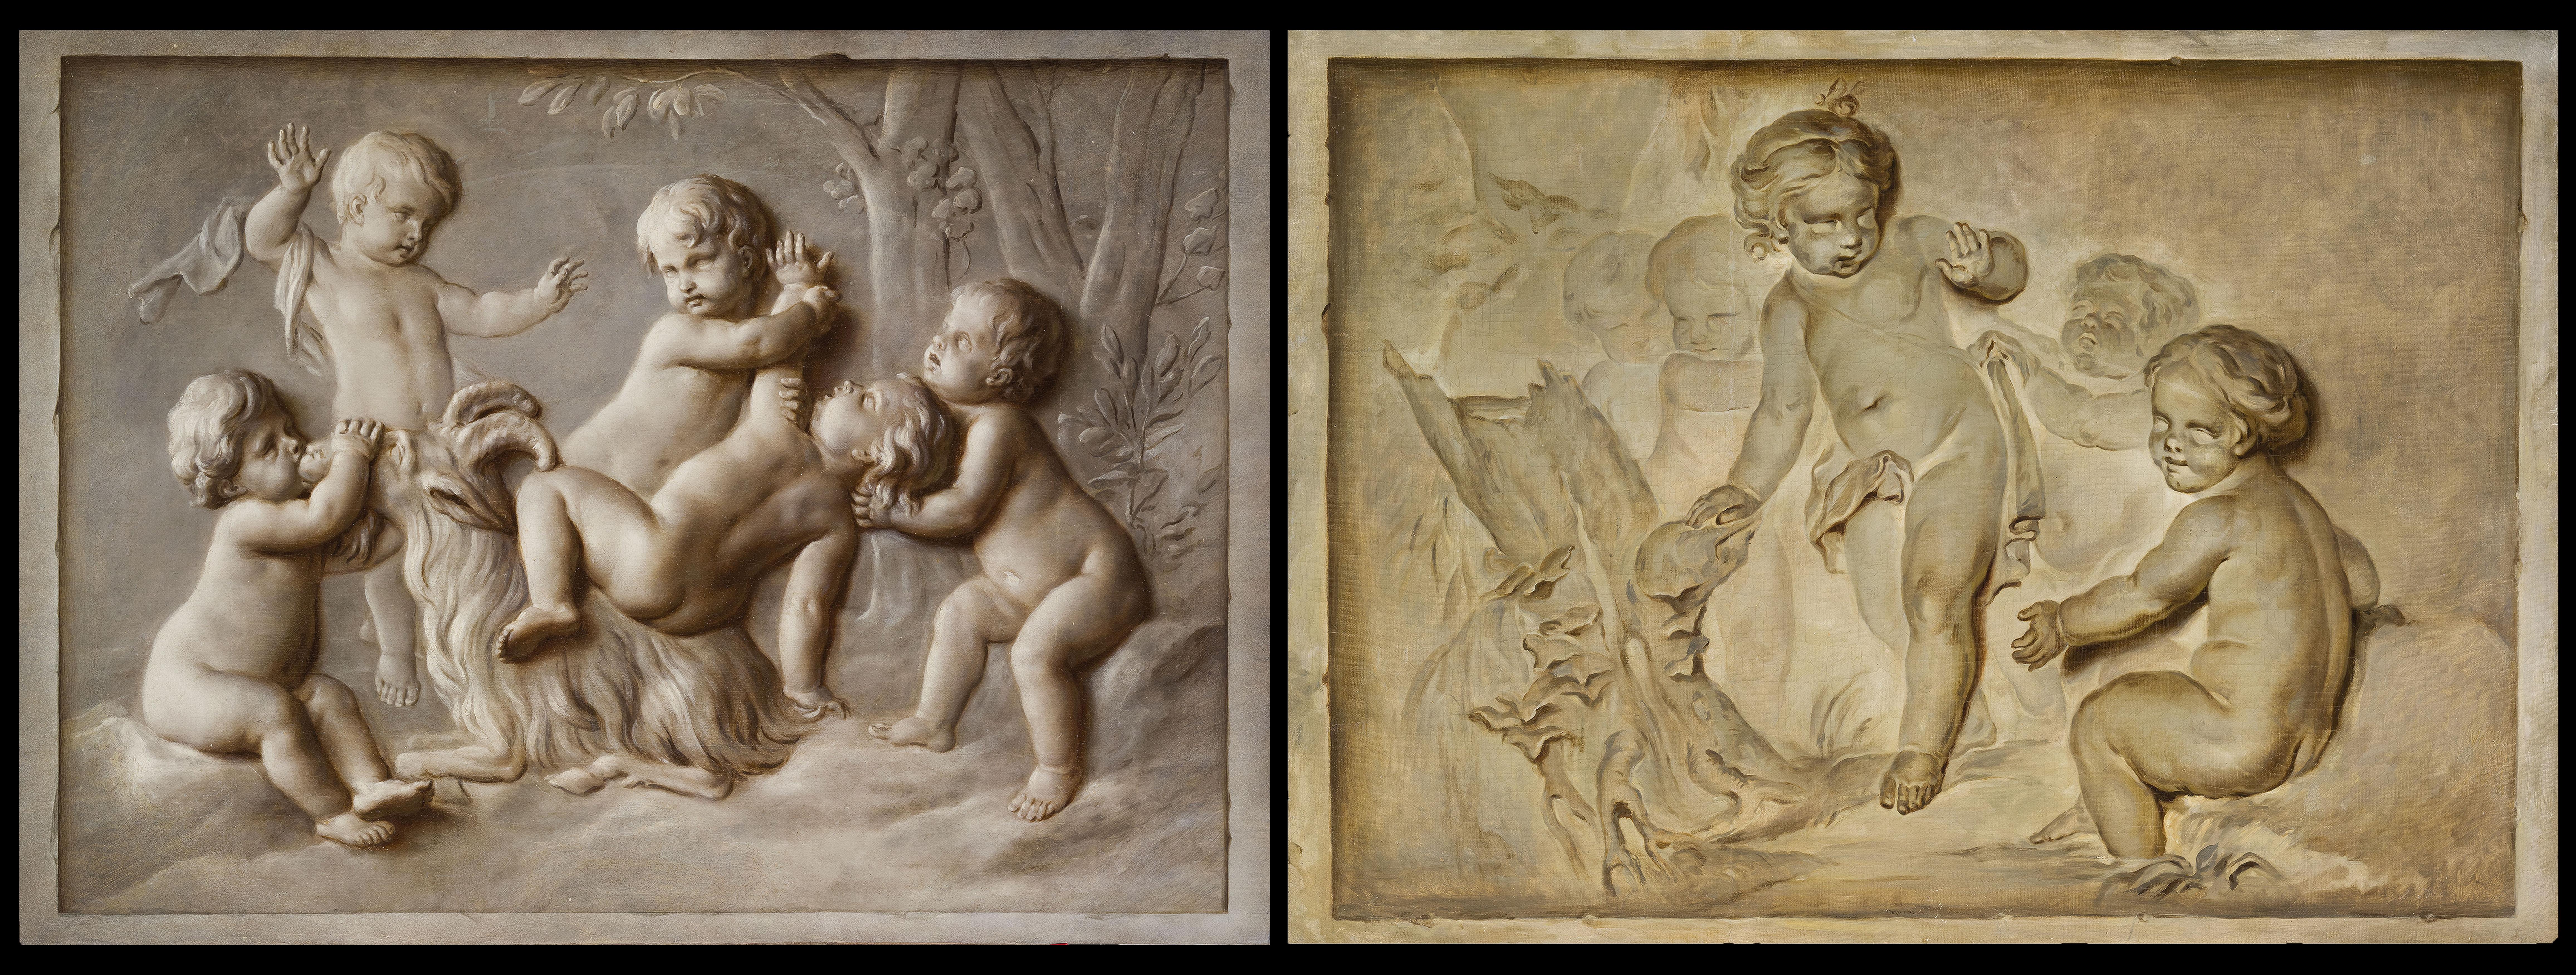 18. Jahrhundert, zwei französische Louis-XVI-Gemälde in Öl auf Leinwand mit Trompe l'œil, zugeschrieben Piat Joseph Sauvage (Tournai, 1744-1818)

Größe: cm H 94 x L 132 jeweils

Das Gemäldepaar in Öl auf Leinwand stellt ein Trompe-l'oeil mit